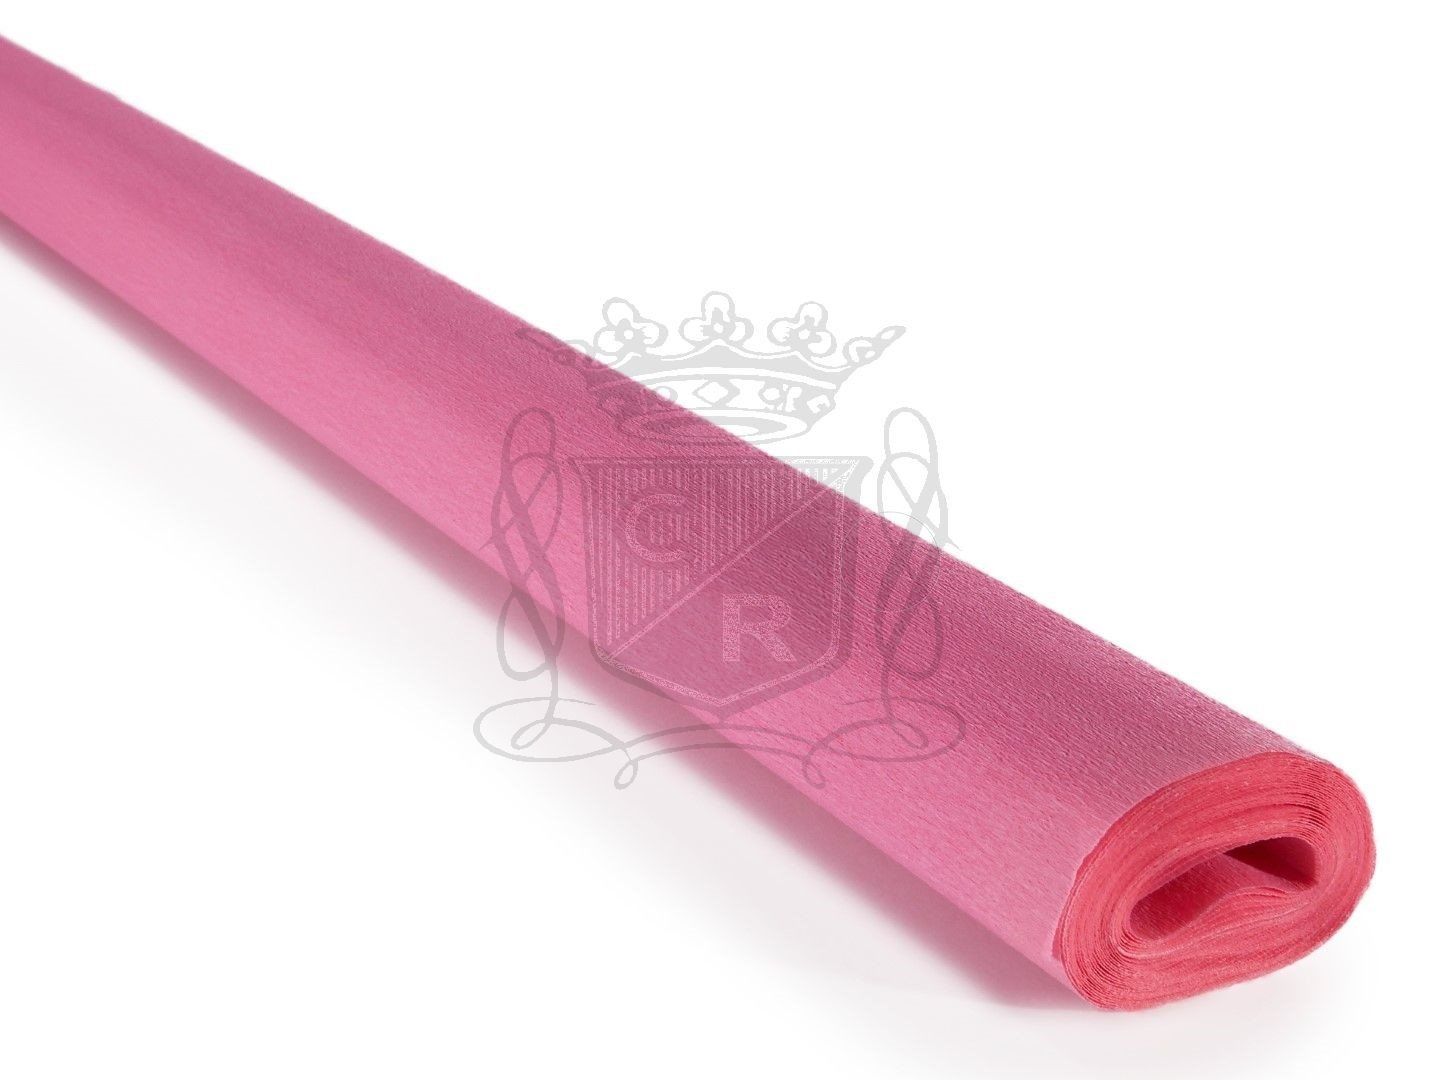 Italyan Krapon Kağıdı NO:210 - Pembe - Pink 60 Gr. 50X250 cm